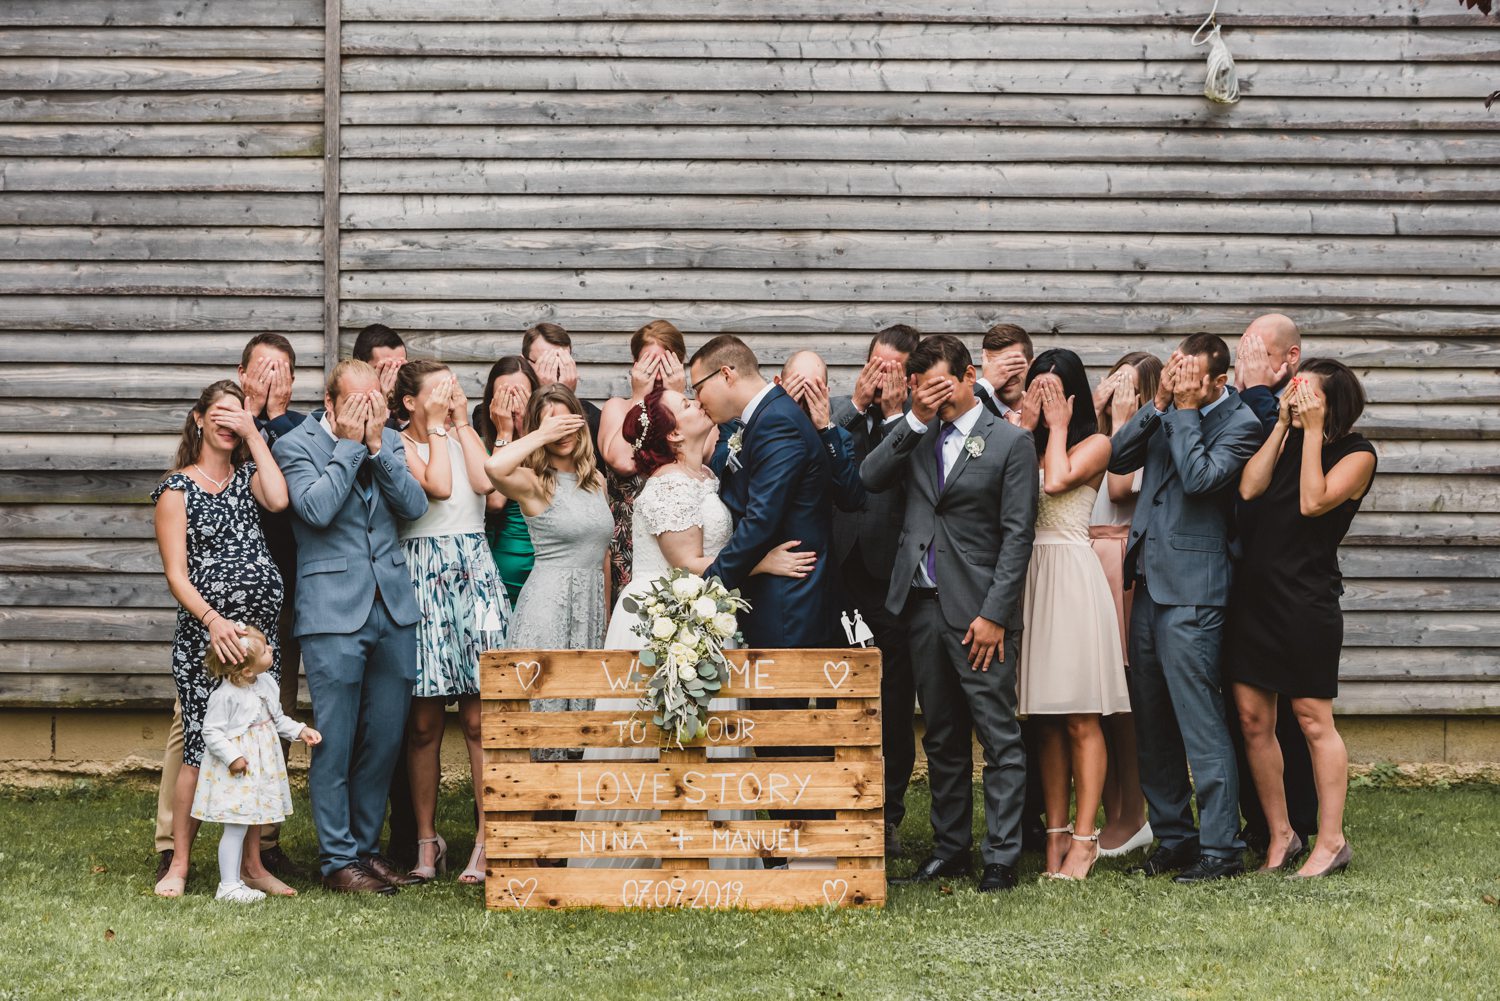 Gruppenfoto Hochzeitsgesellschaft bei der sich Brautpaar küsst und alle anderen die Augen zu halten.